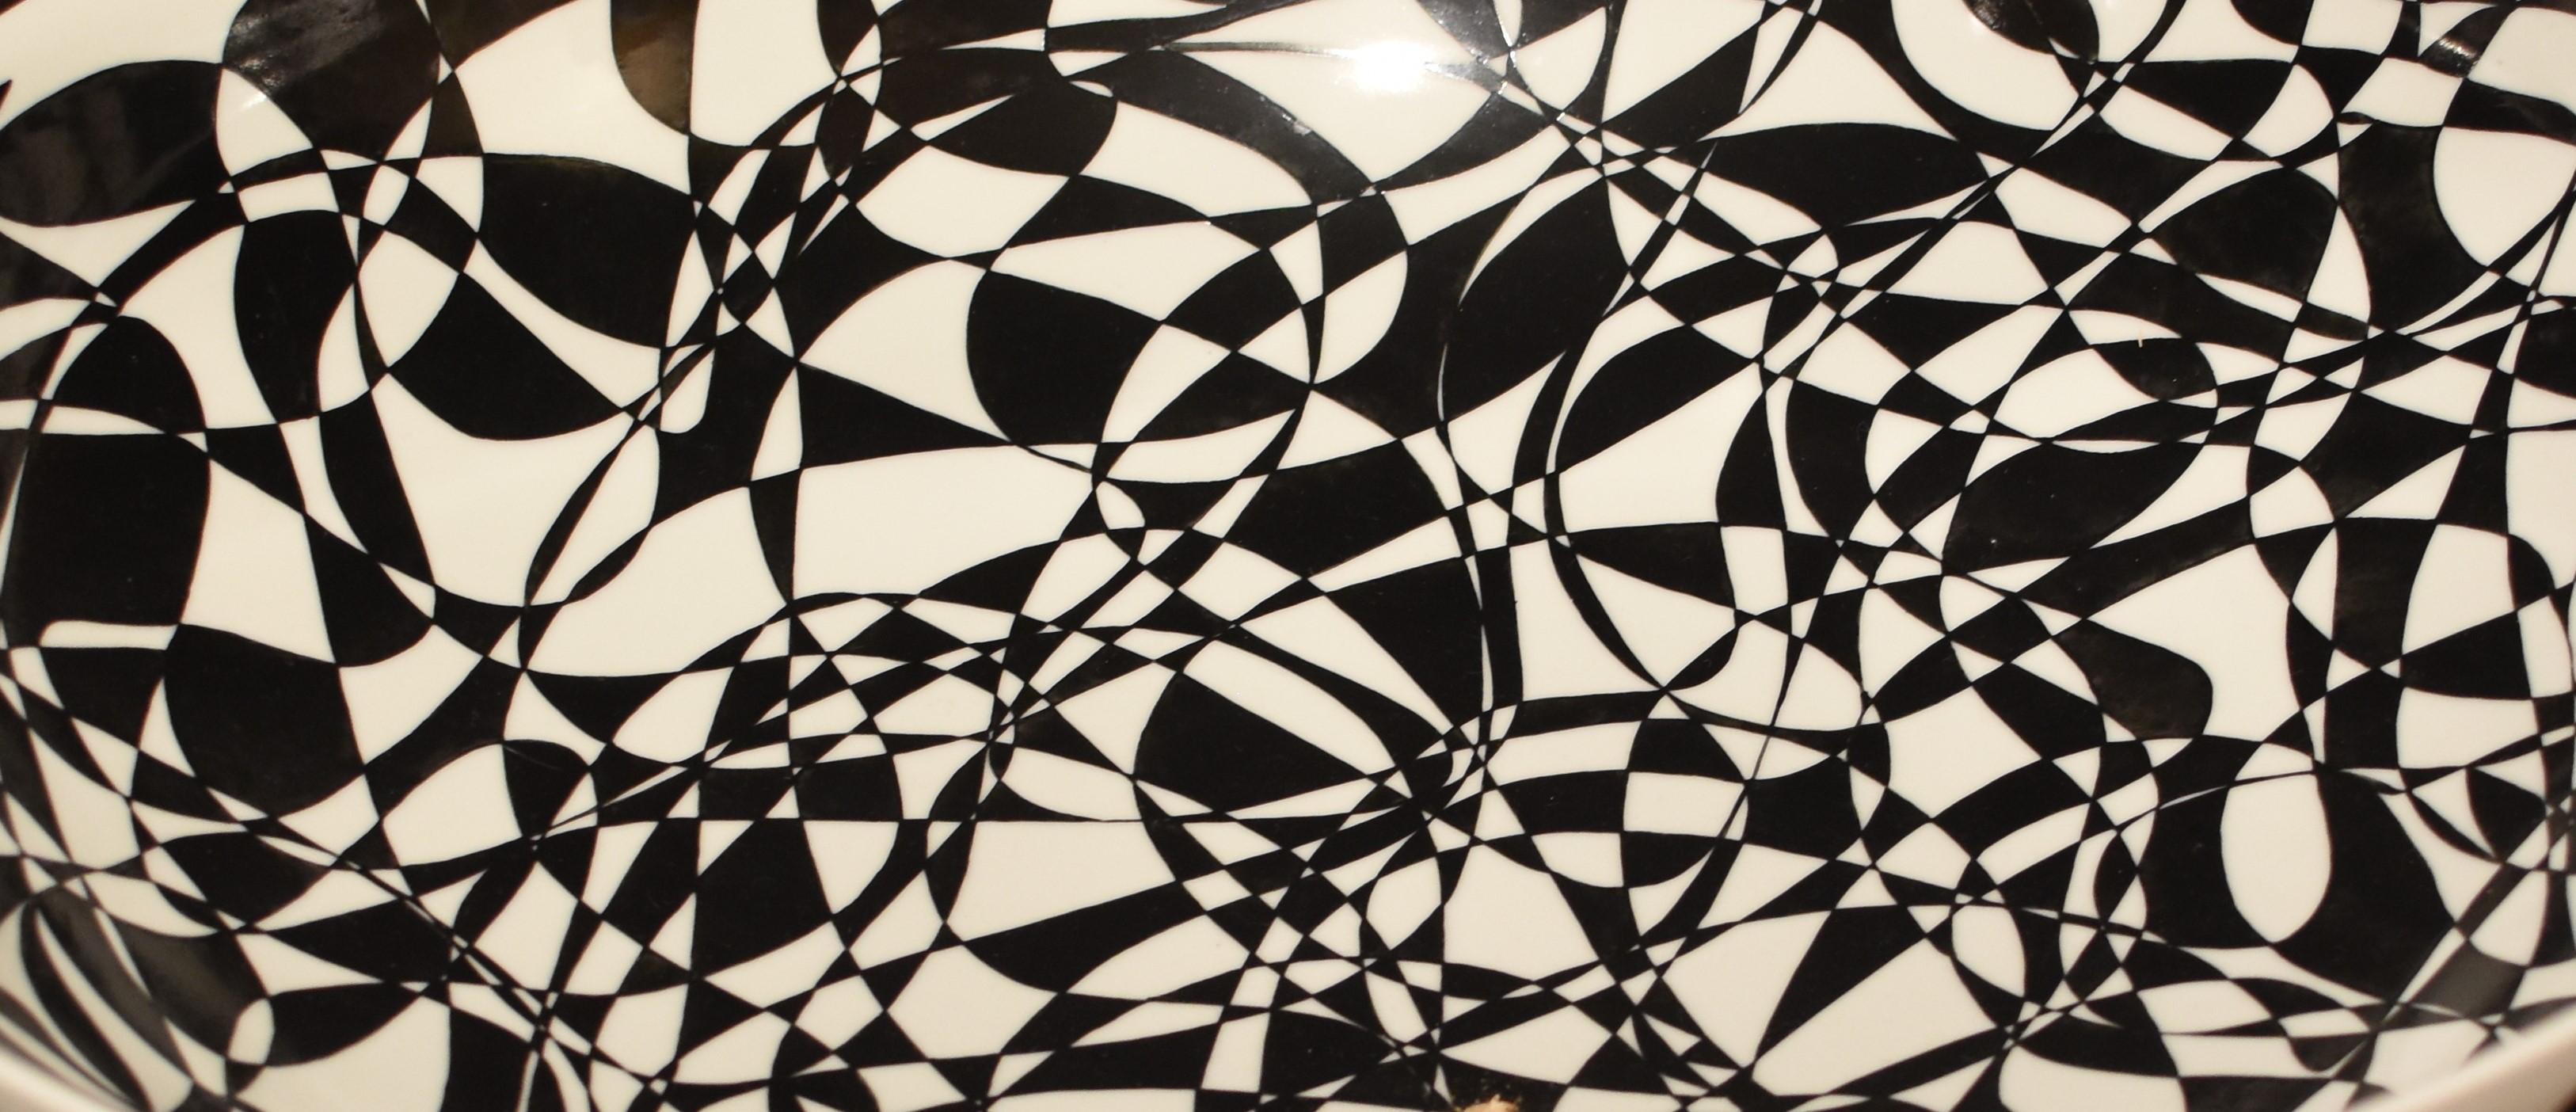 Außergewöhnliche japanische zeitgenössische dekorative Schale in Museumsqualität, extrem aufwendig von Hand bemalt, ein Ausstellungsstück mit einem atemberaubenden abstrakten Muster in Schwarz vor einem milchig weißen Hintergrund. Der Künstler ist